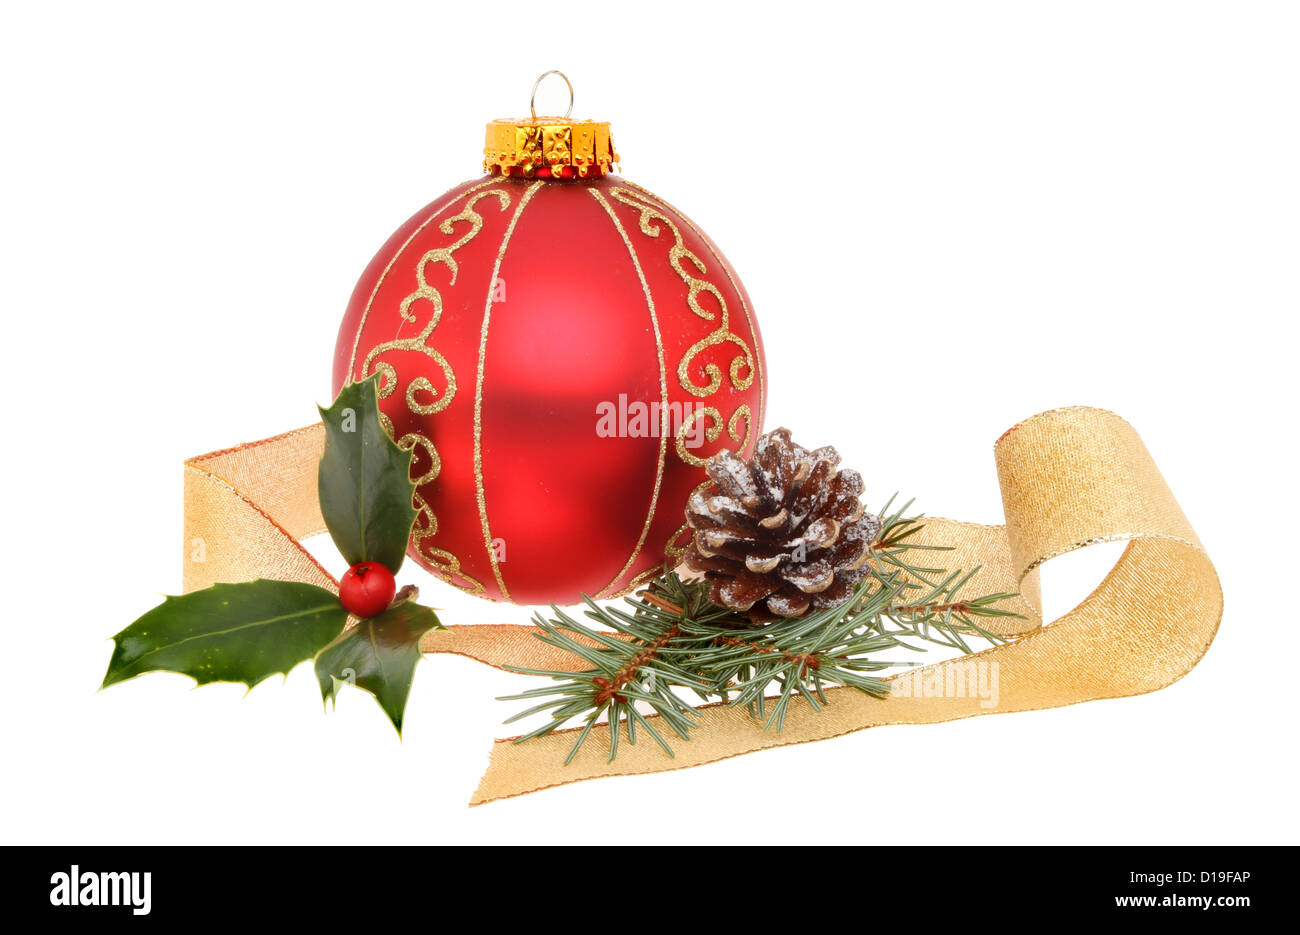 Décoration de Noël d'une boule rouge et or avec un ruban et feuillage de saison isolés contre white Banque D'Images